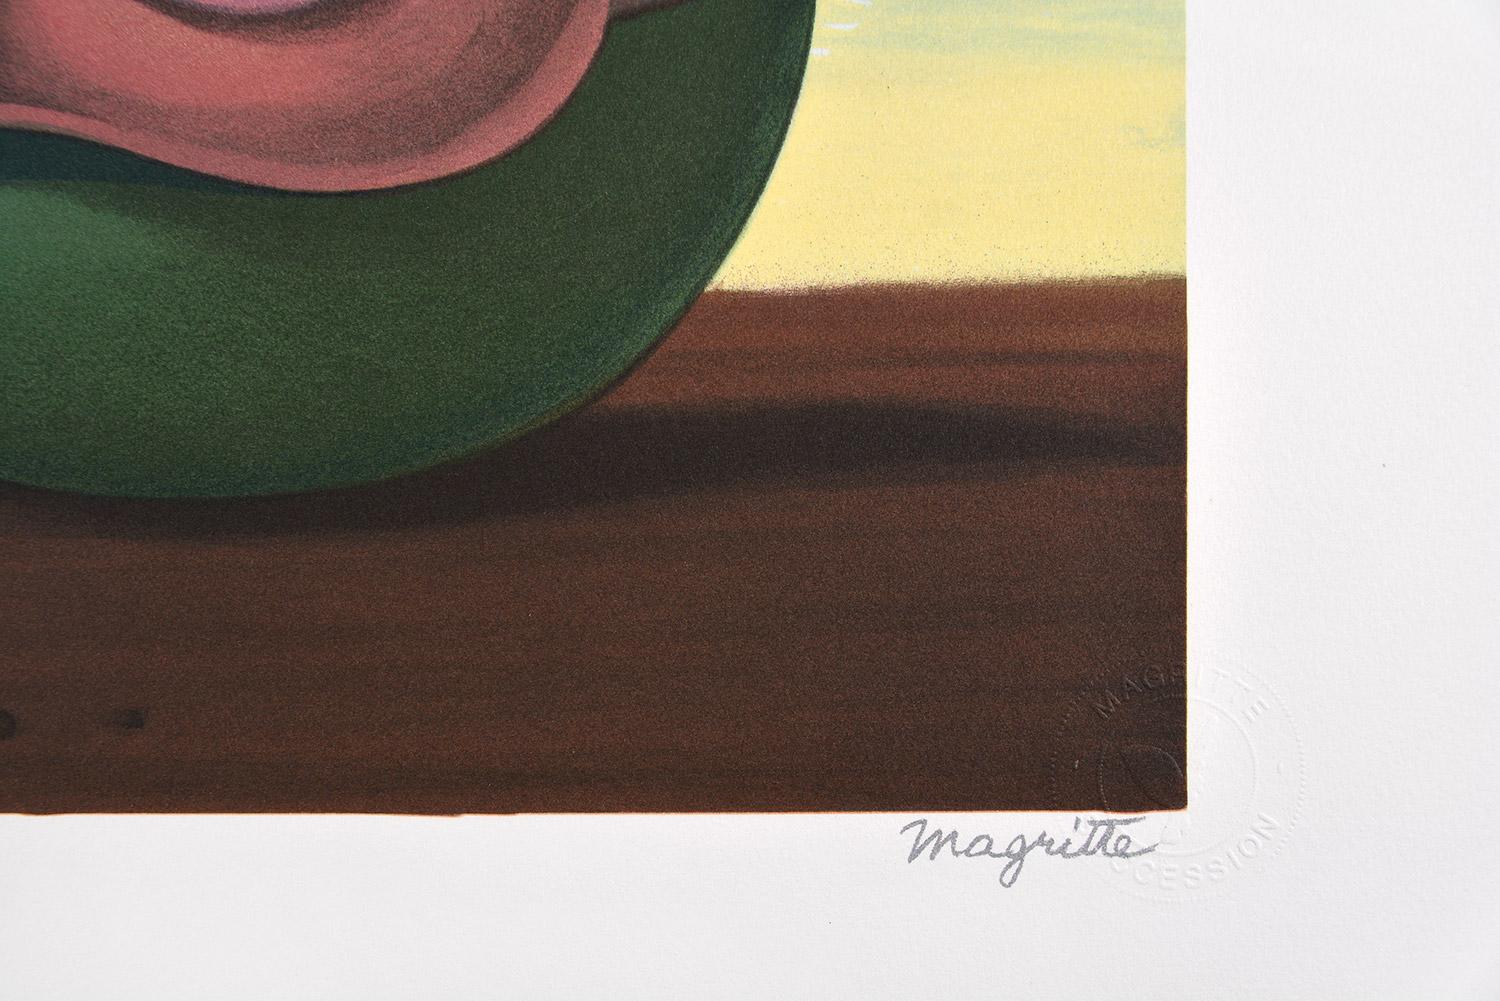 René Magritte - LA VALSE HESITATION, 1950 (L'HESITATION WALTZ)
Date de création : 2010
Support : Lithographie sur papier BFK Rives
Numéro d'édition : 131/275
Taille : 60 x 45 cm
Condit : Nouveau, en parfait état et jamais encadré
Observations :